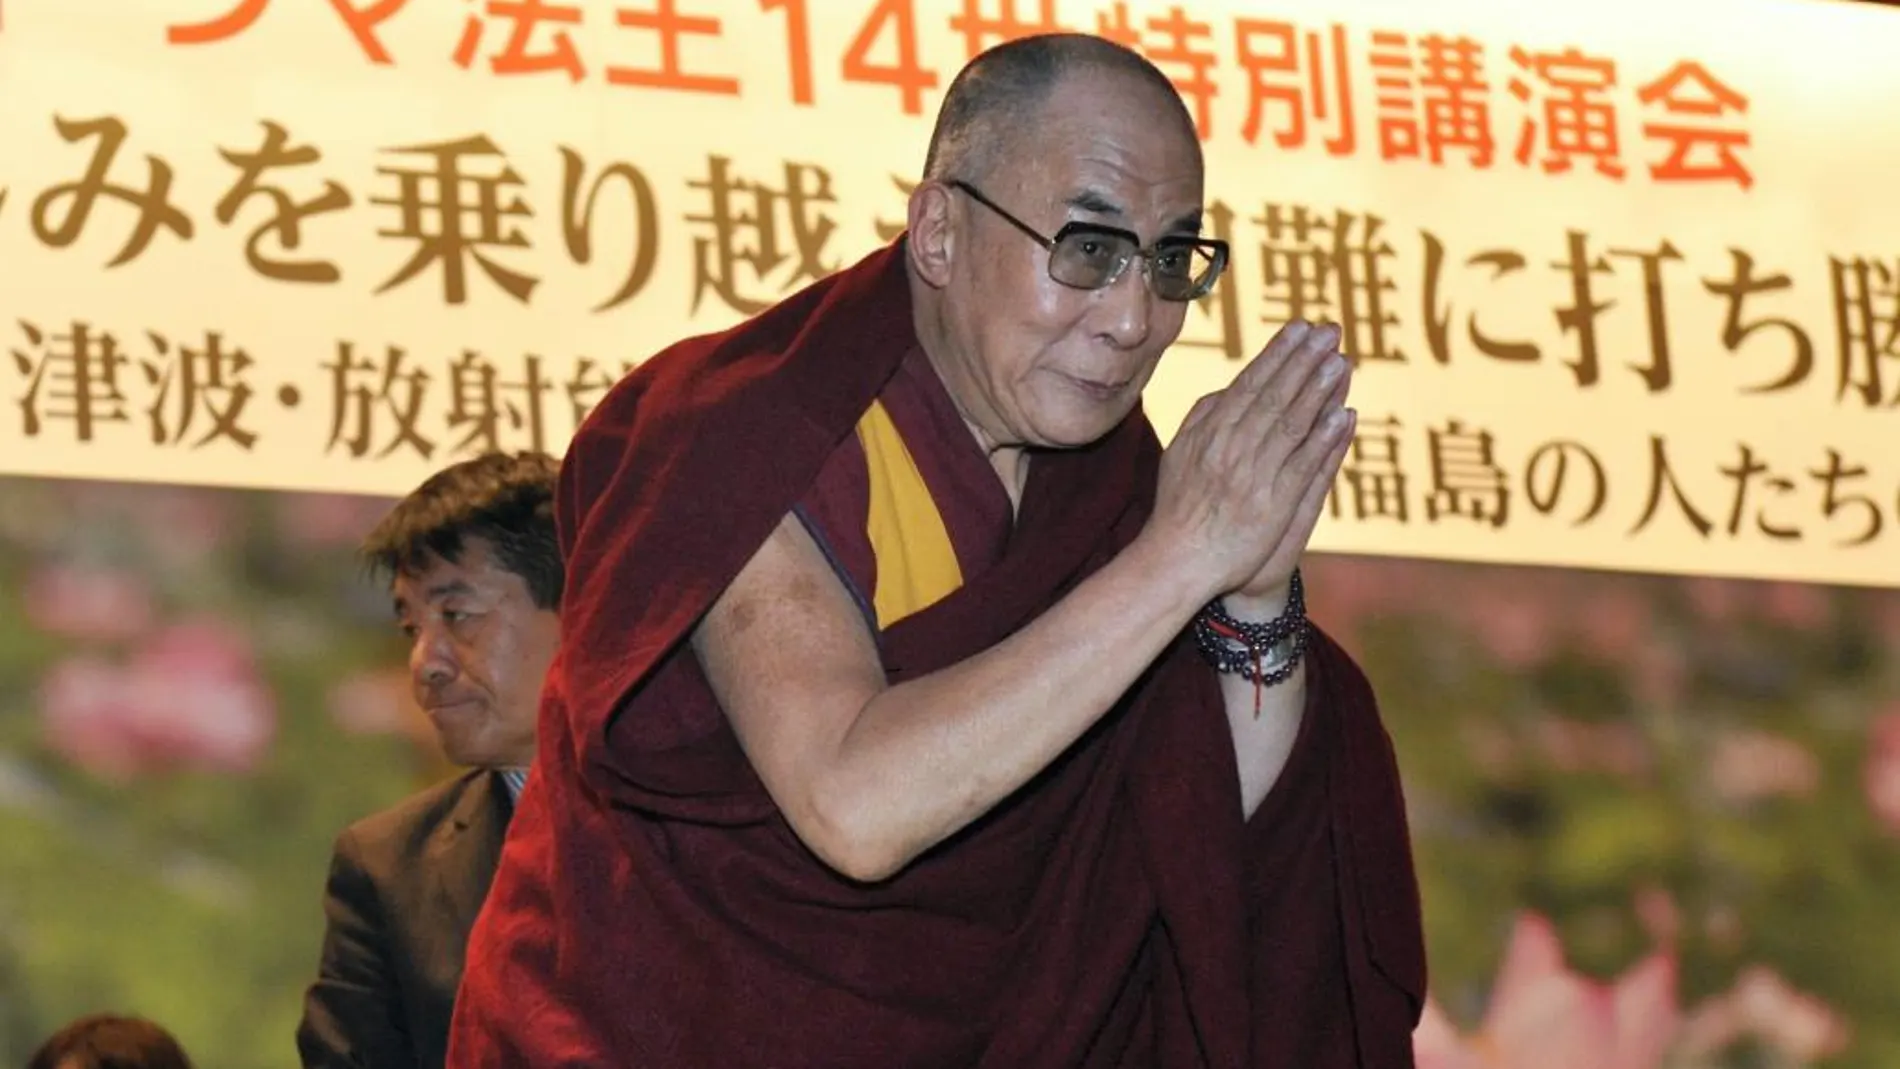 El líder espiritual tibetano, el Dalai Lama, saluda a la audiencia